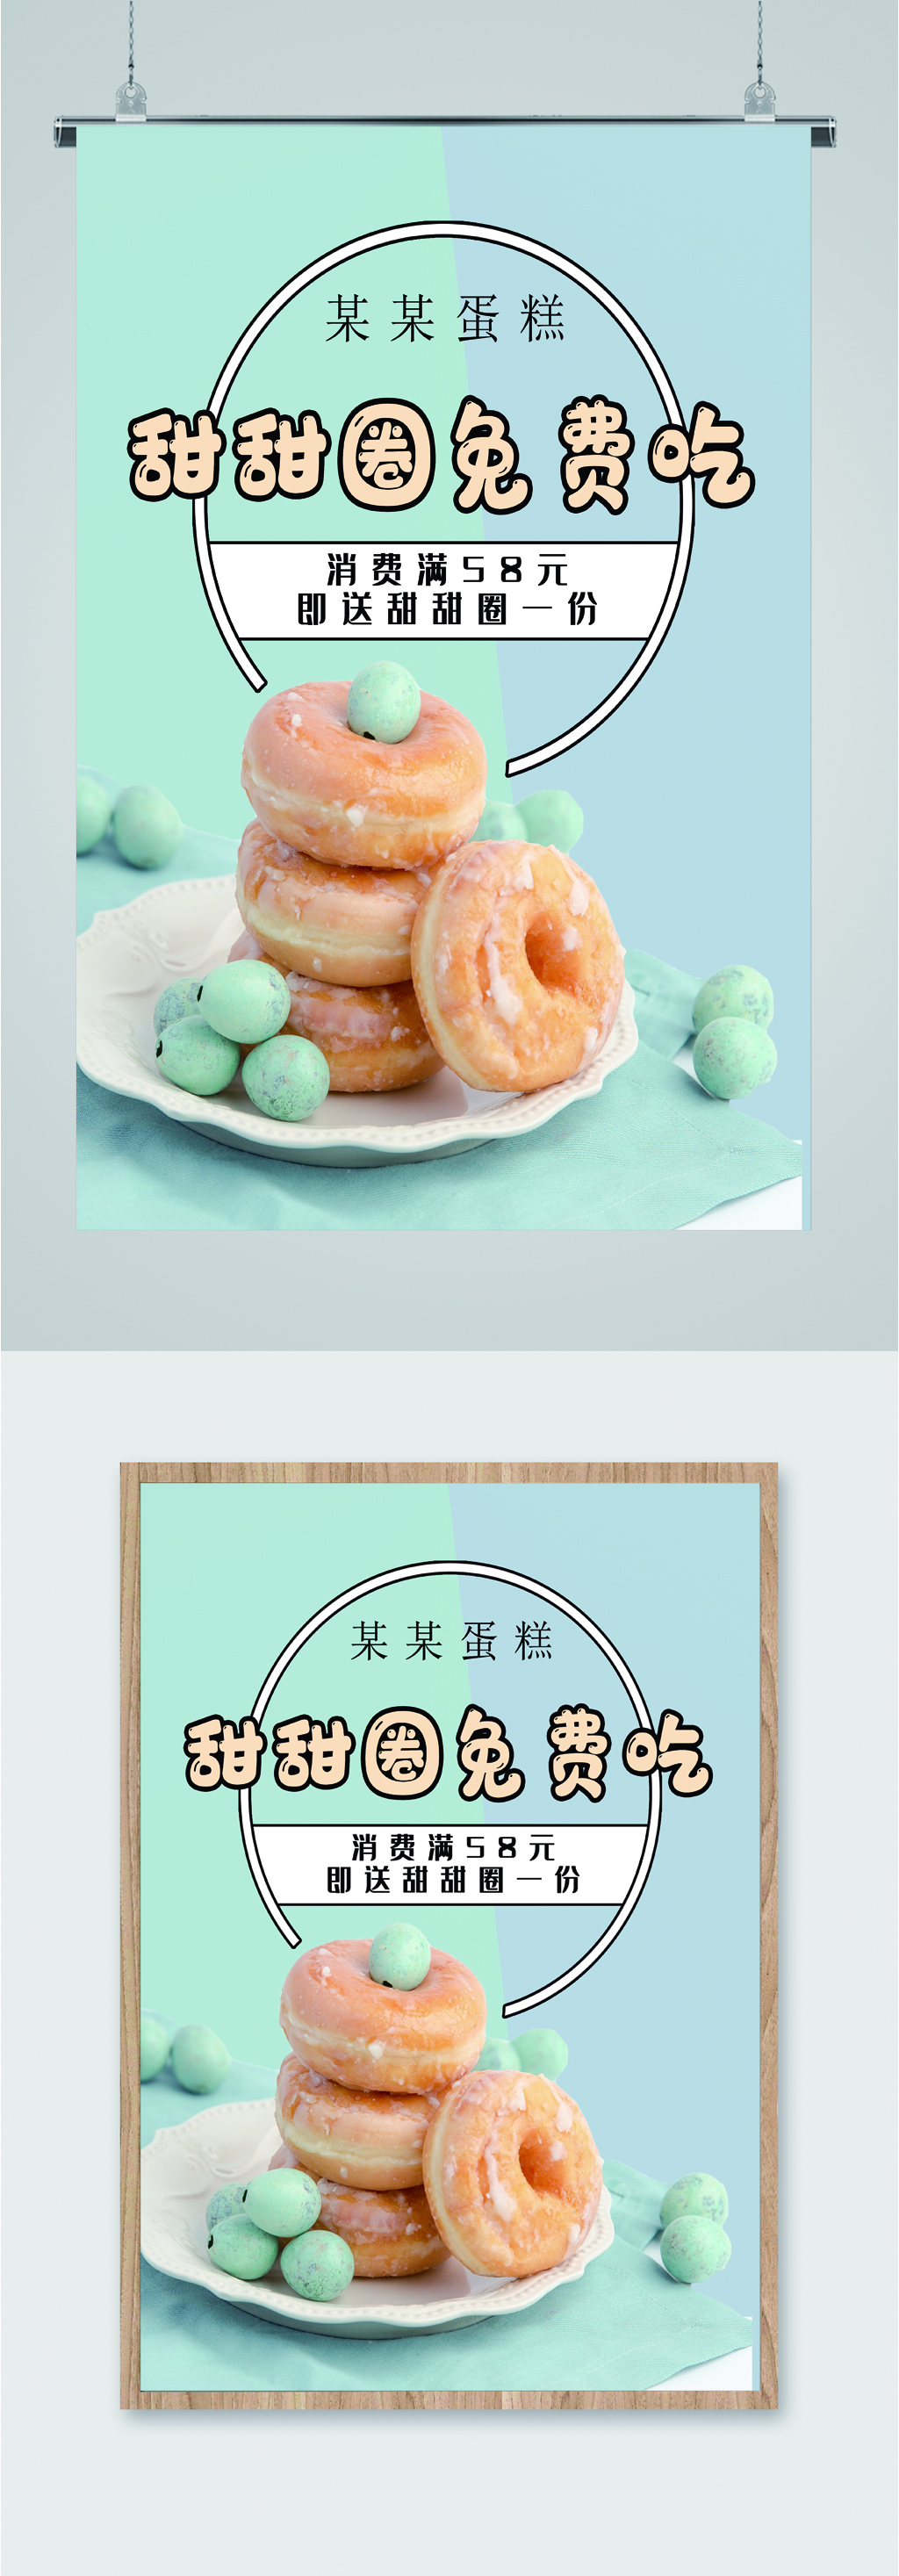 甜甜圈免费吃促销海报